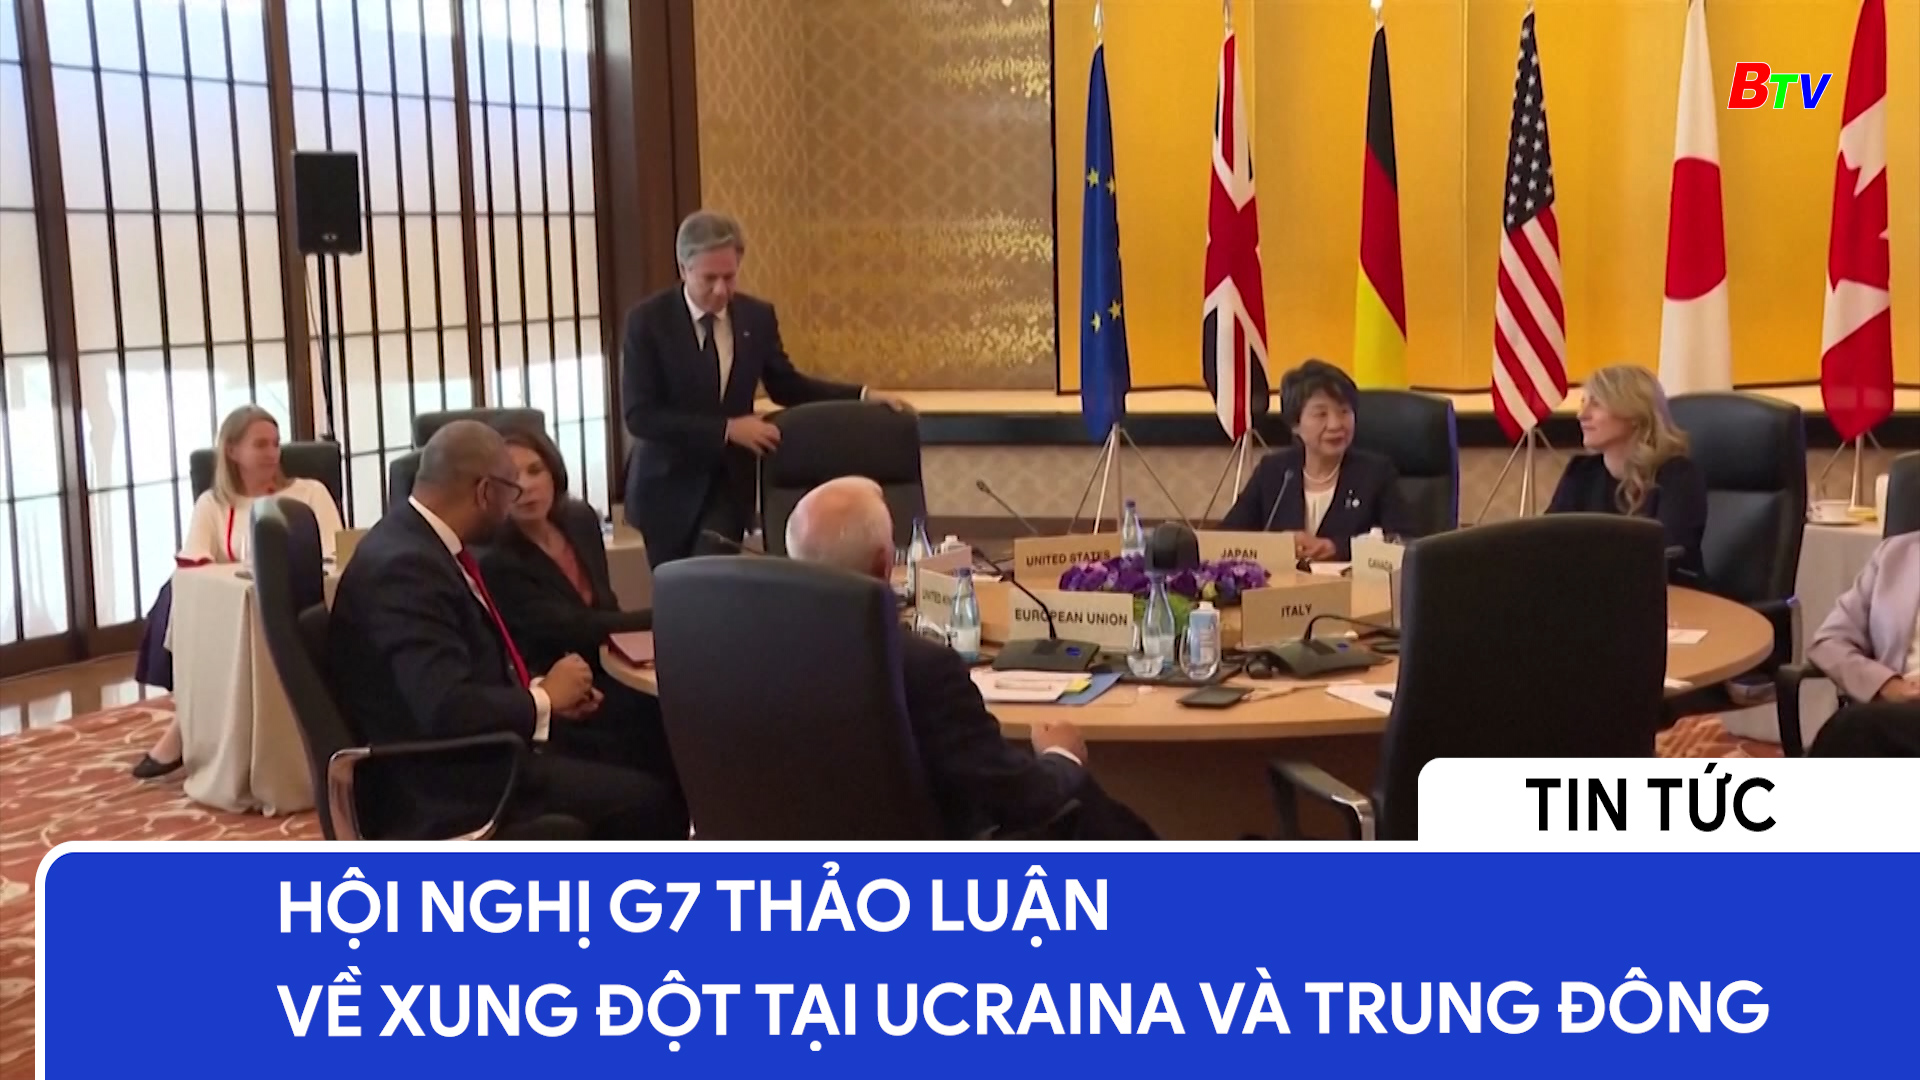 Hội nghị G7 thảo luận về xung đột tại Ucraina và Trung đông